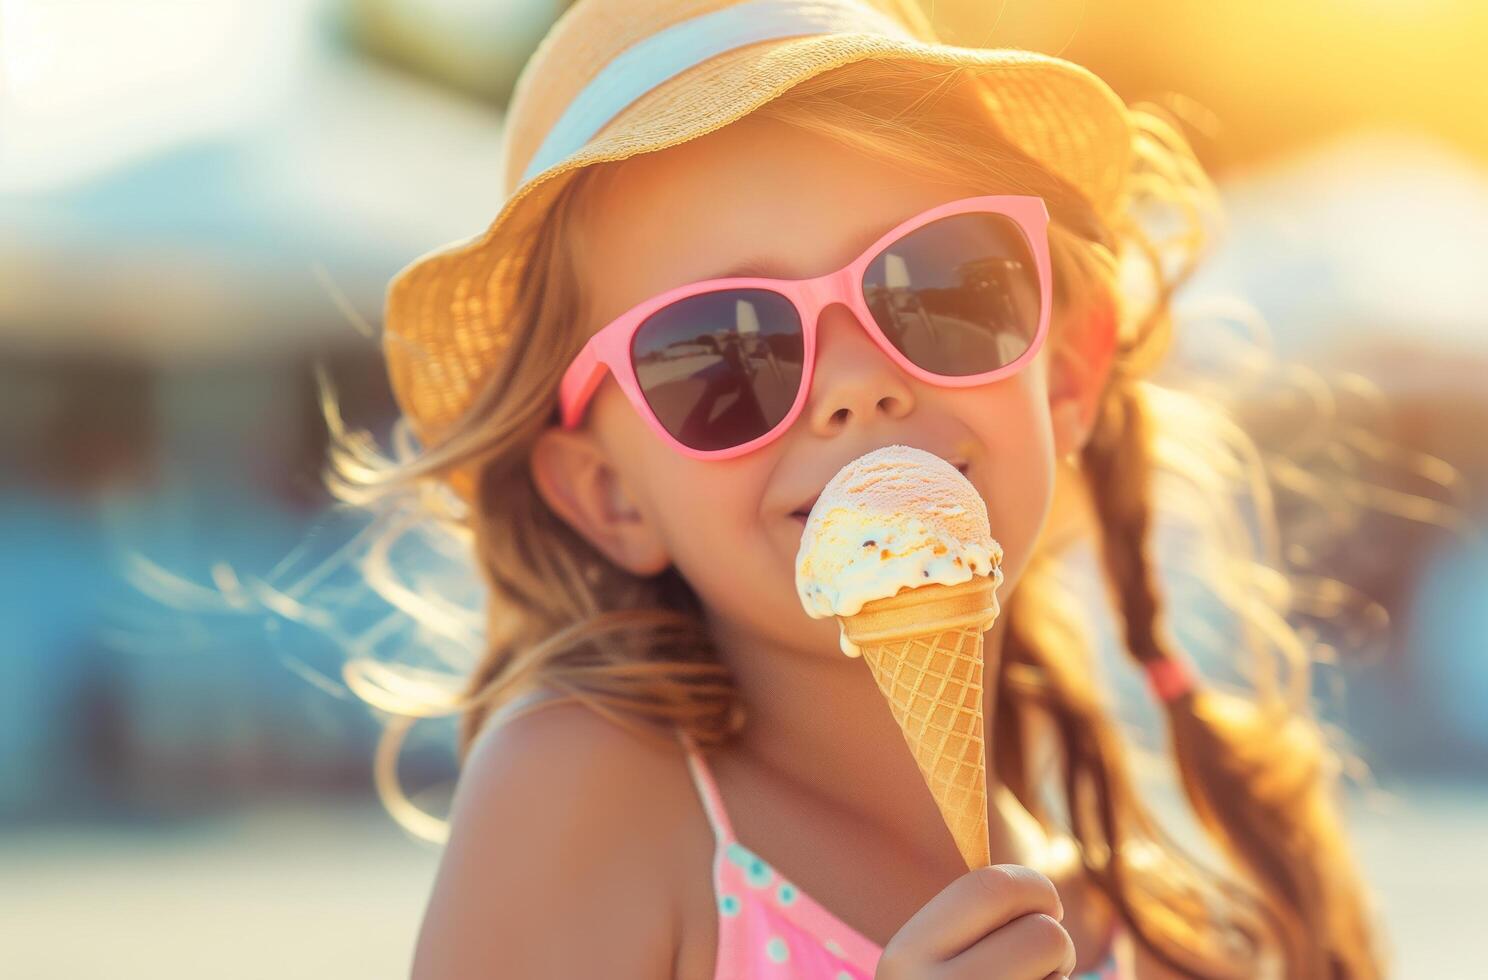 Girl with ice cream photo